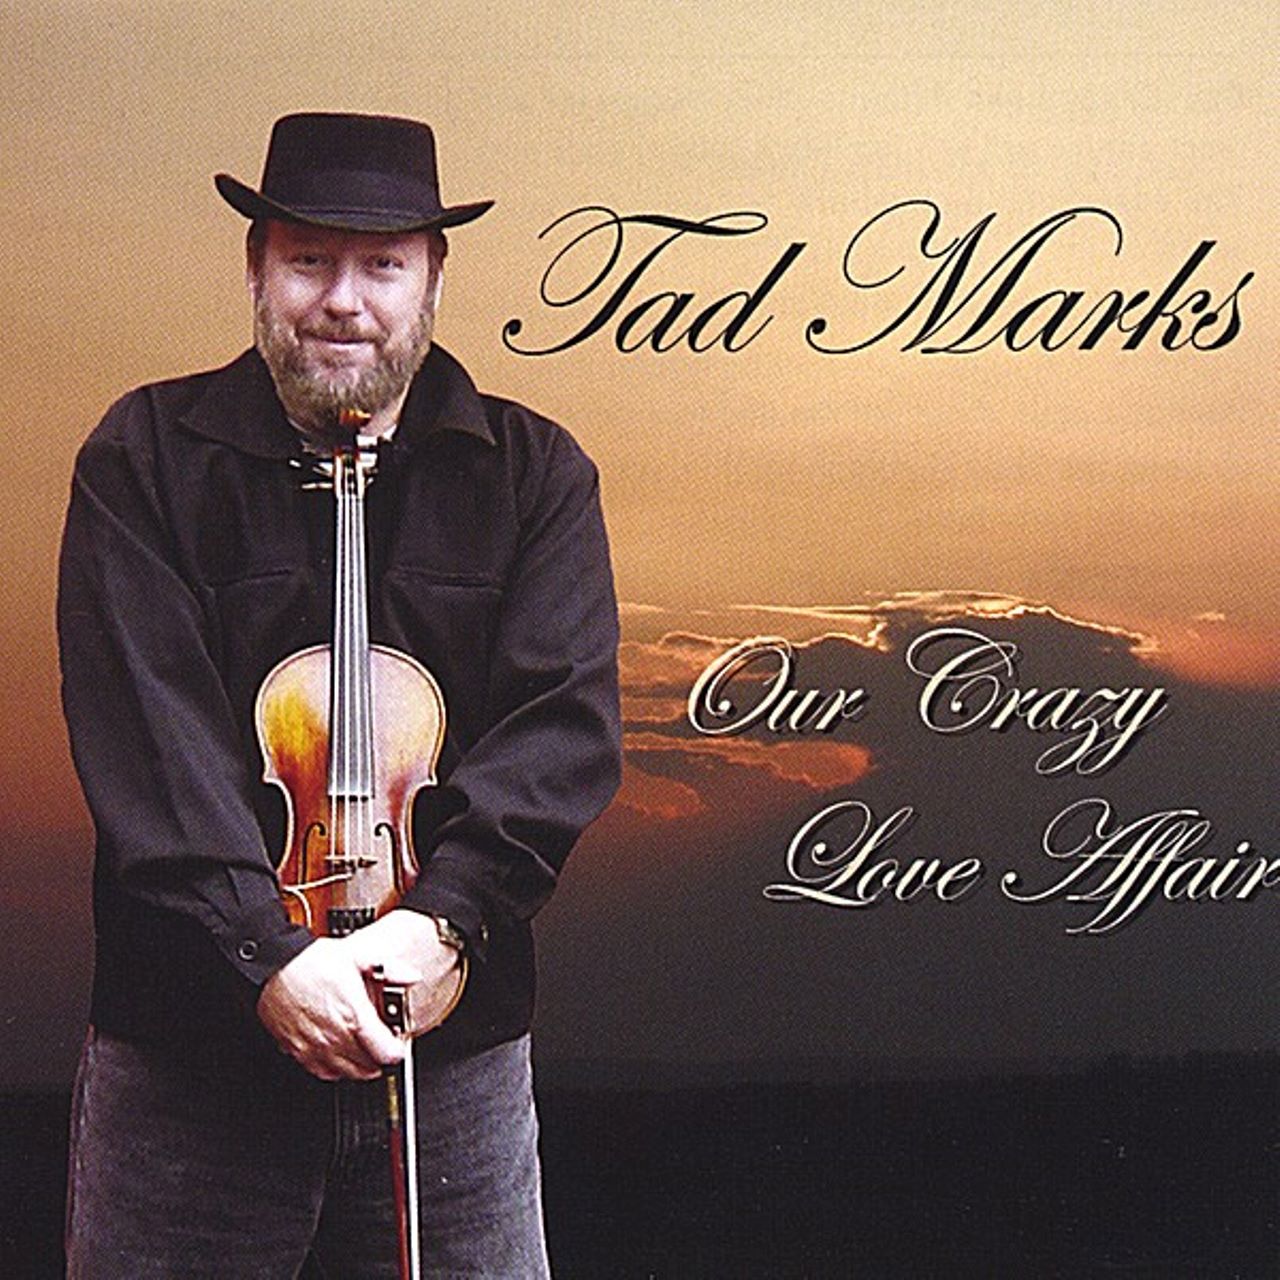 Tad Marks - Our Crazy Love Affairs cover album